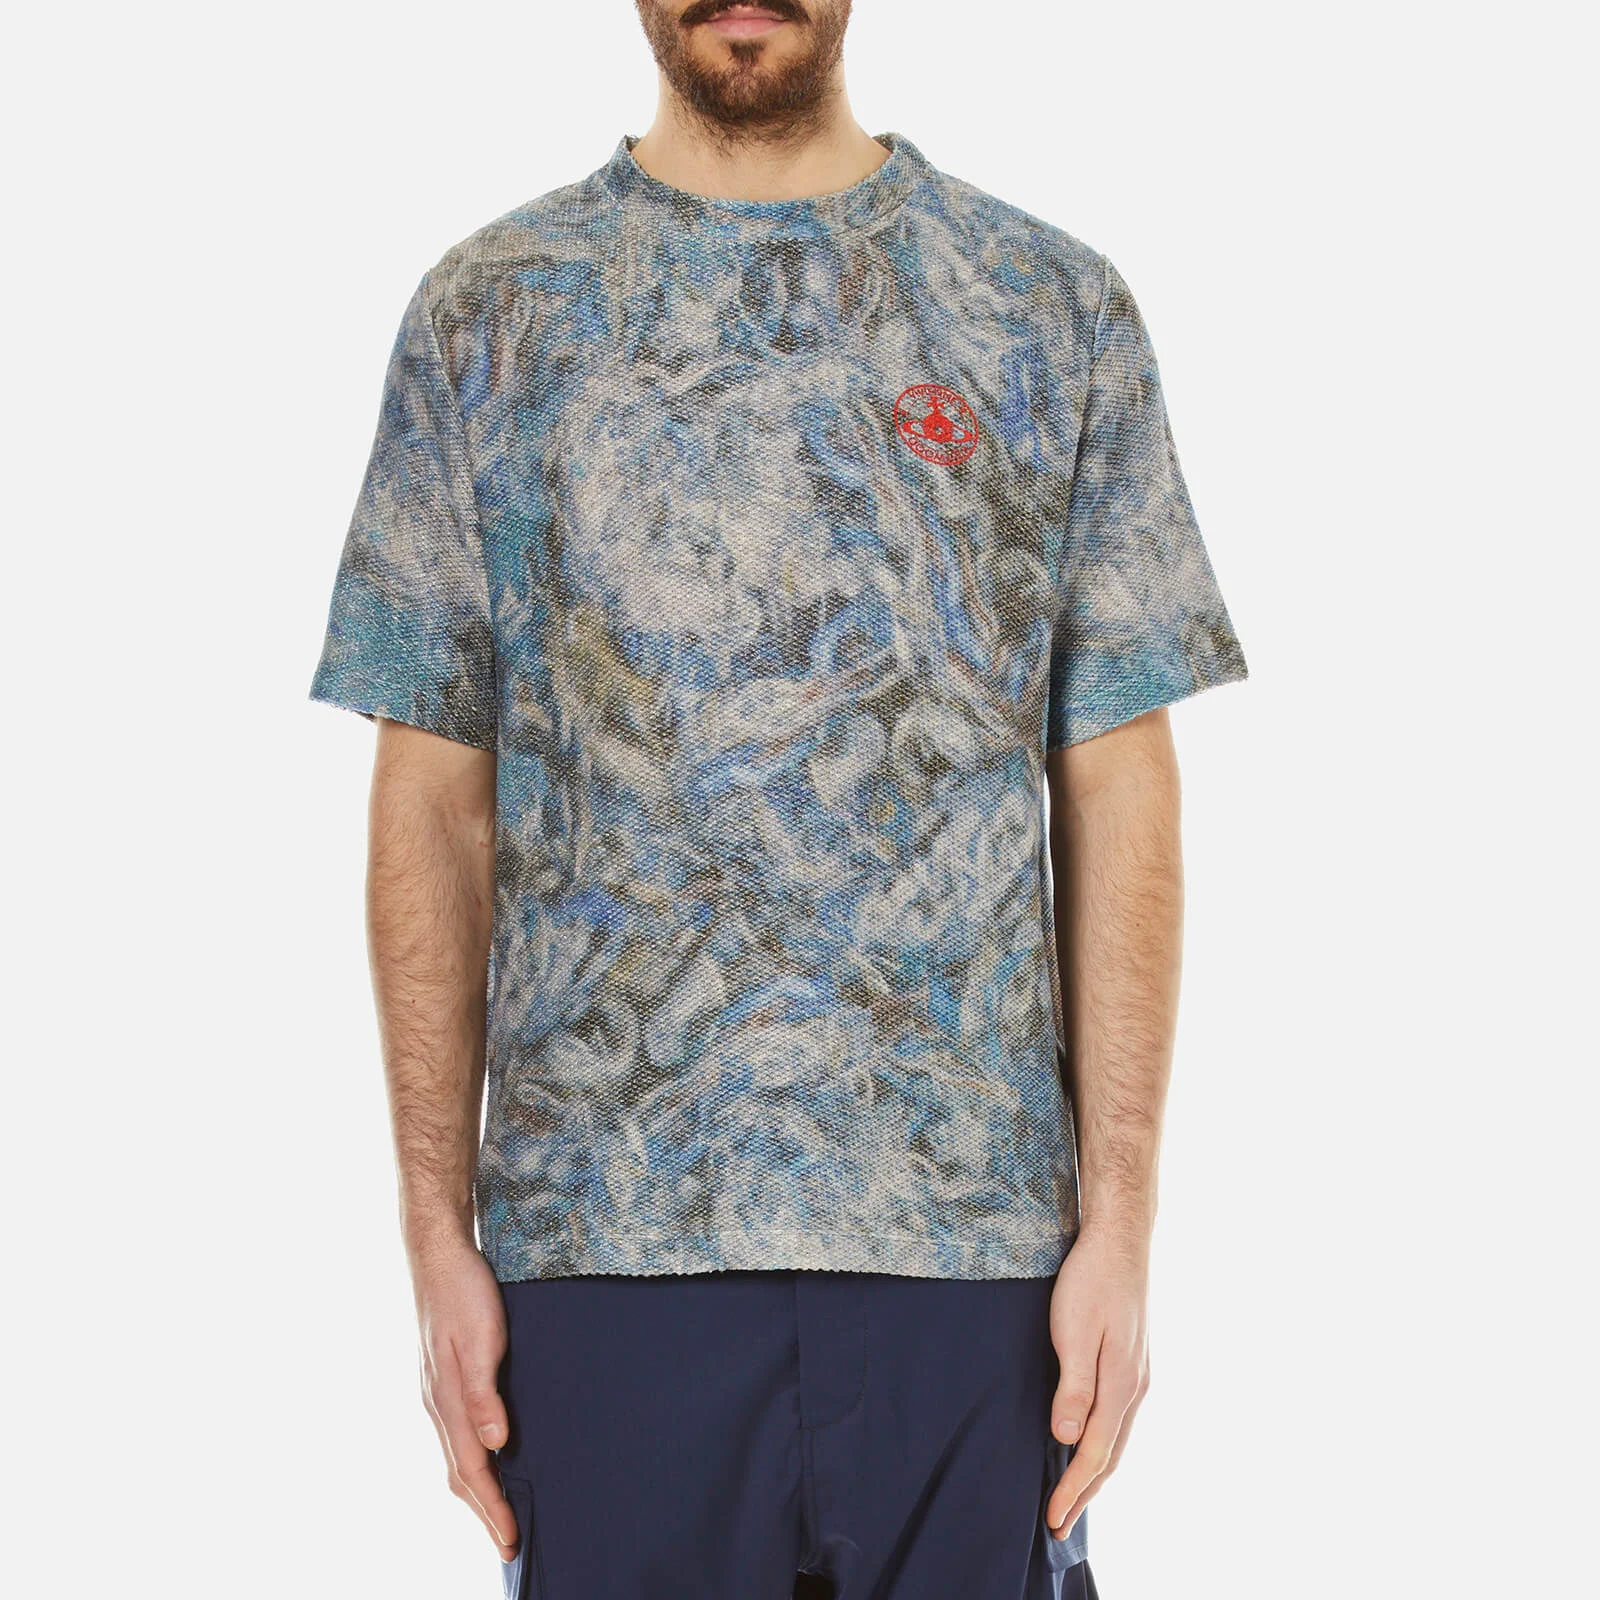 Vivienne Westwood Men's Military Mess T-Shirt - Blue Print Image 1